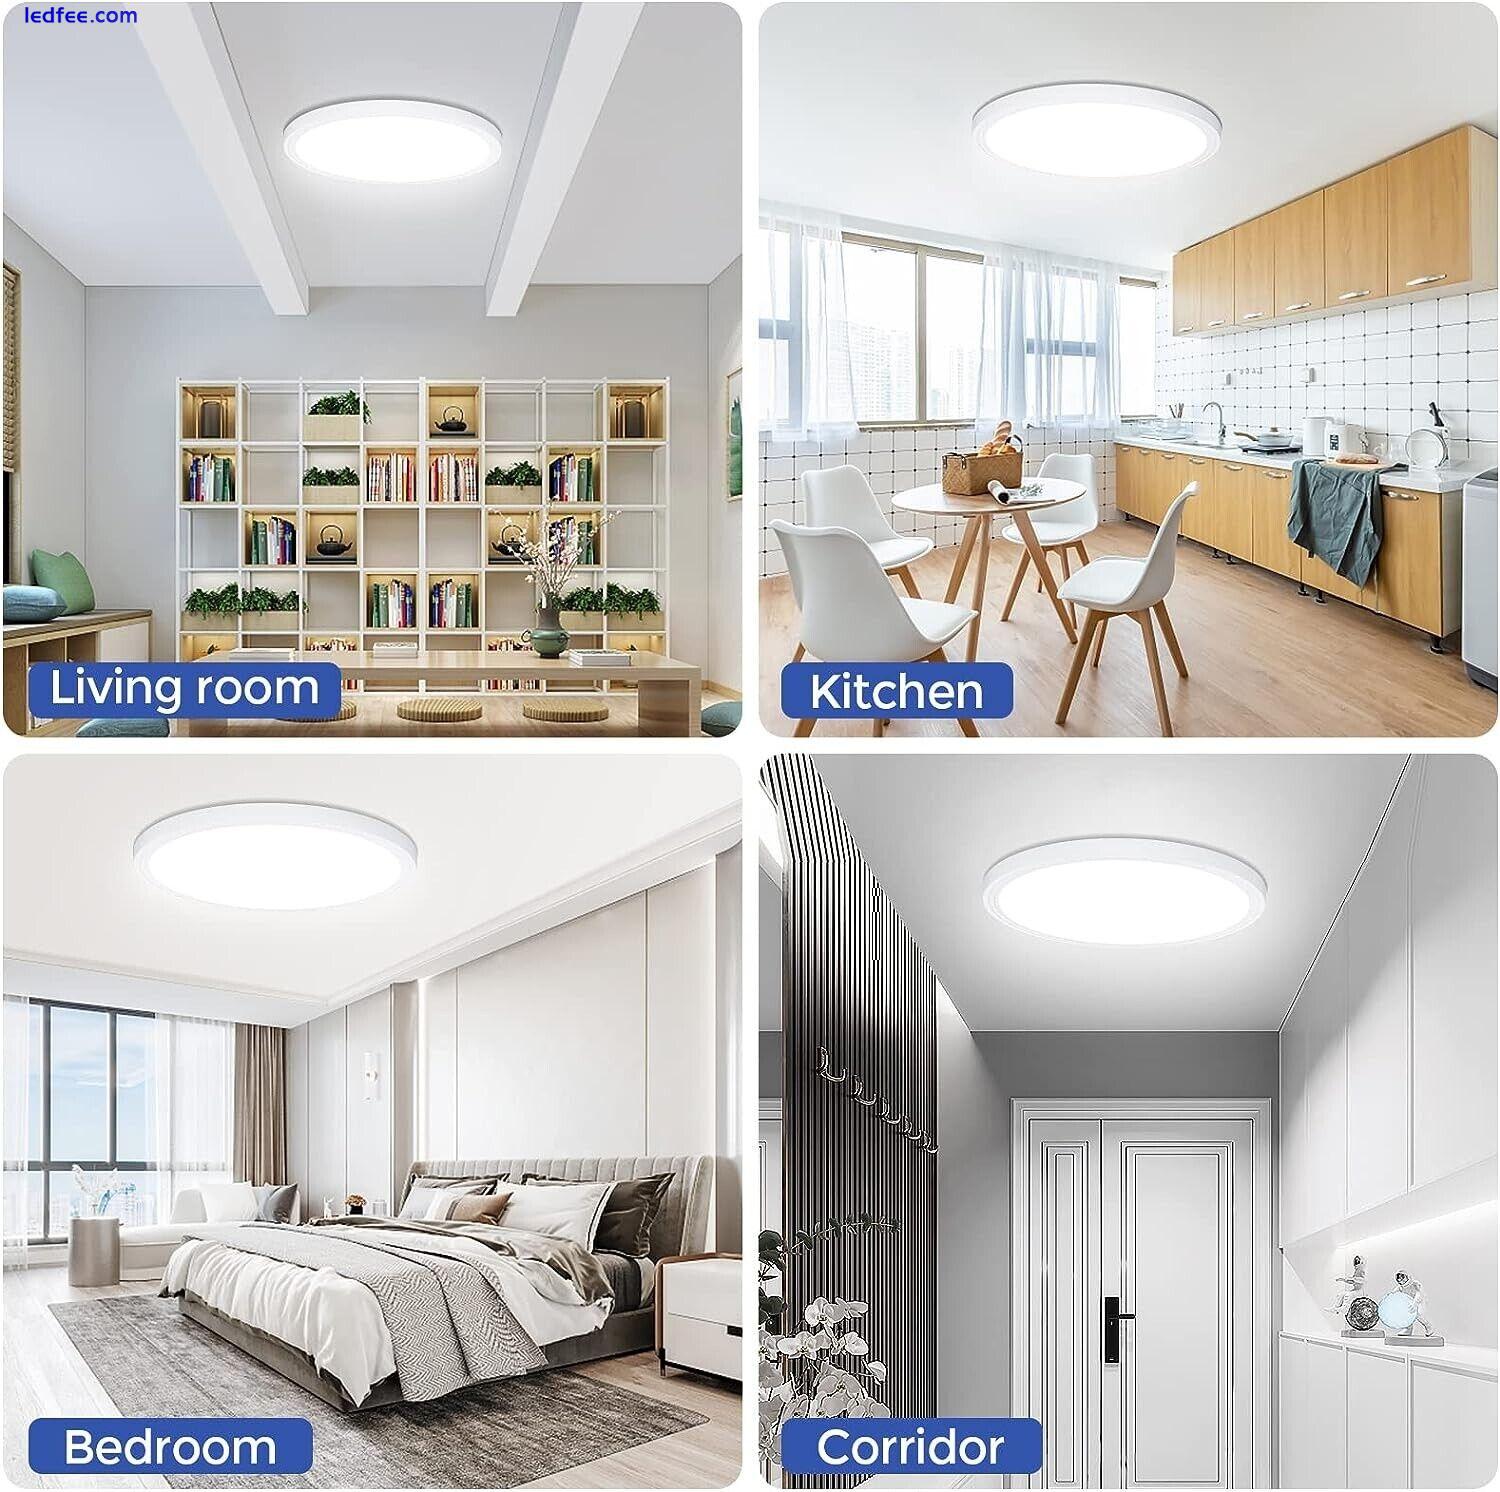 24W Flush Mount LED Ceiling Light Fixture (6000K, 2200LM) - White 4 